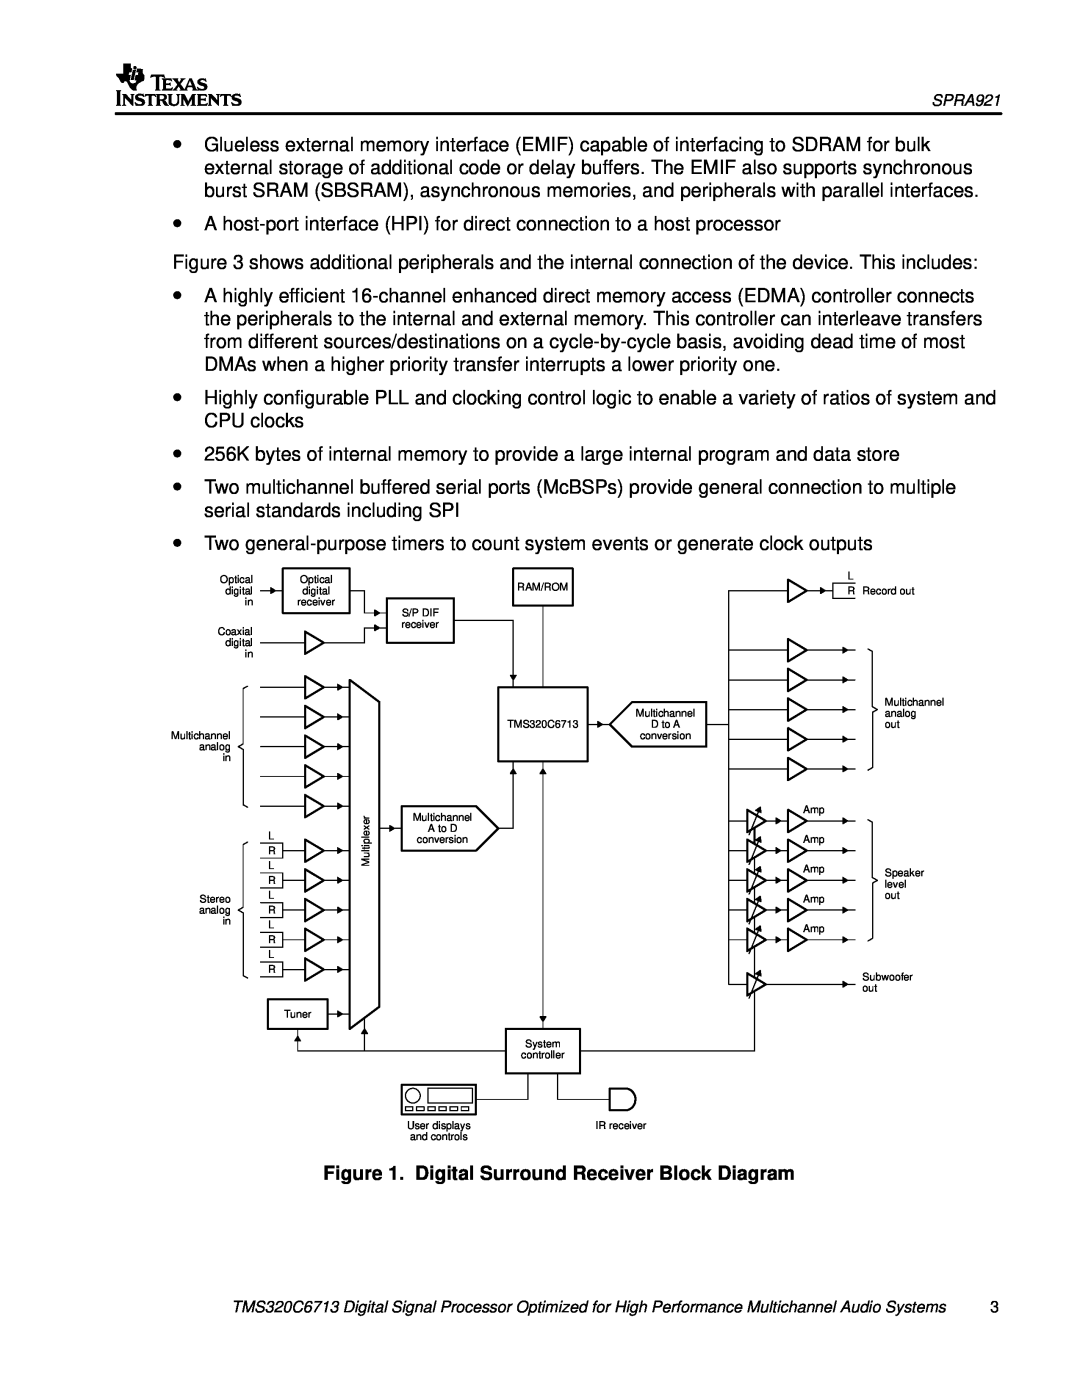 Philips TMS320C6713 manual Digital Surround Receiver Block Diagram 